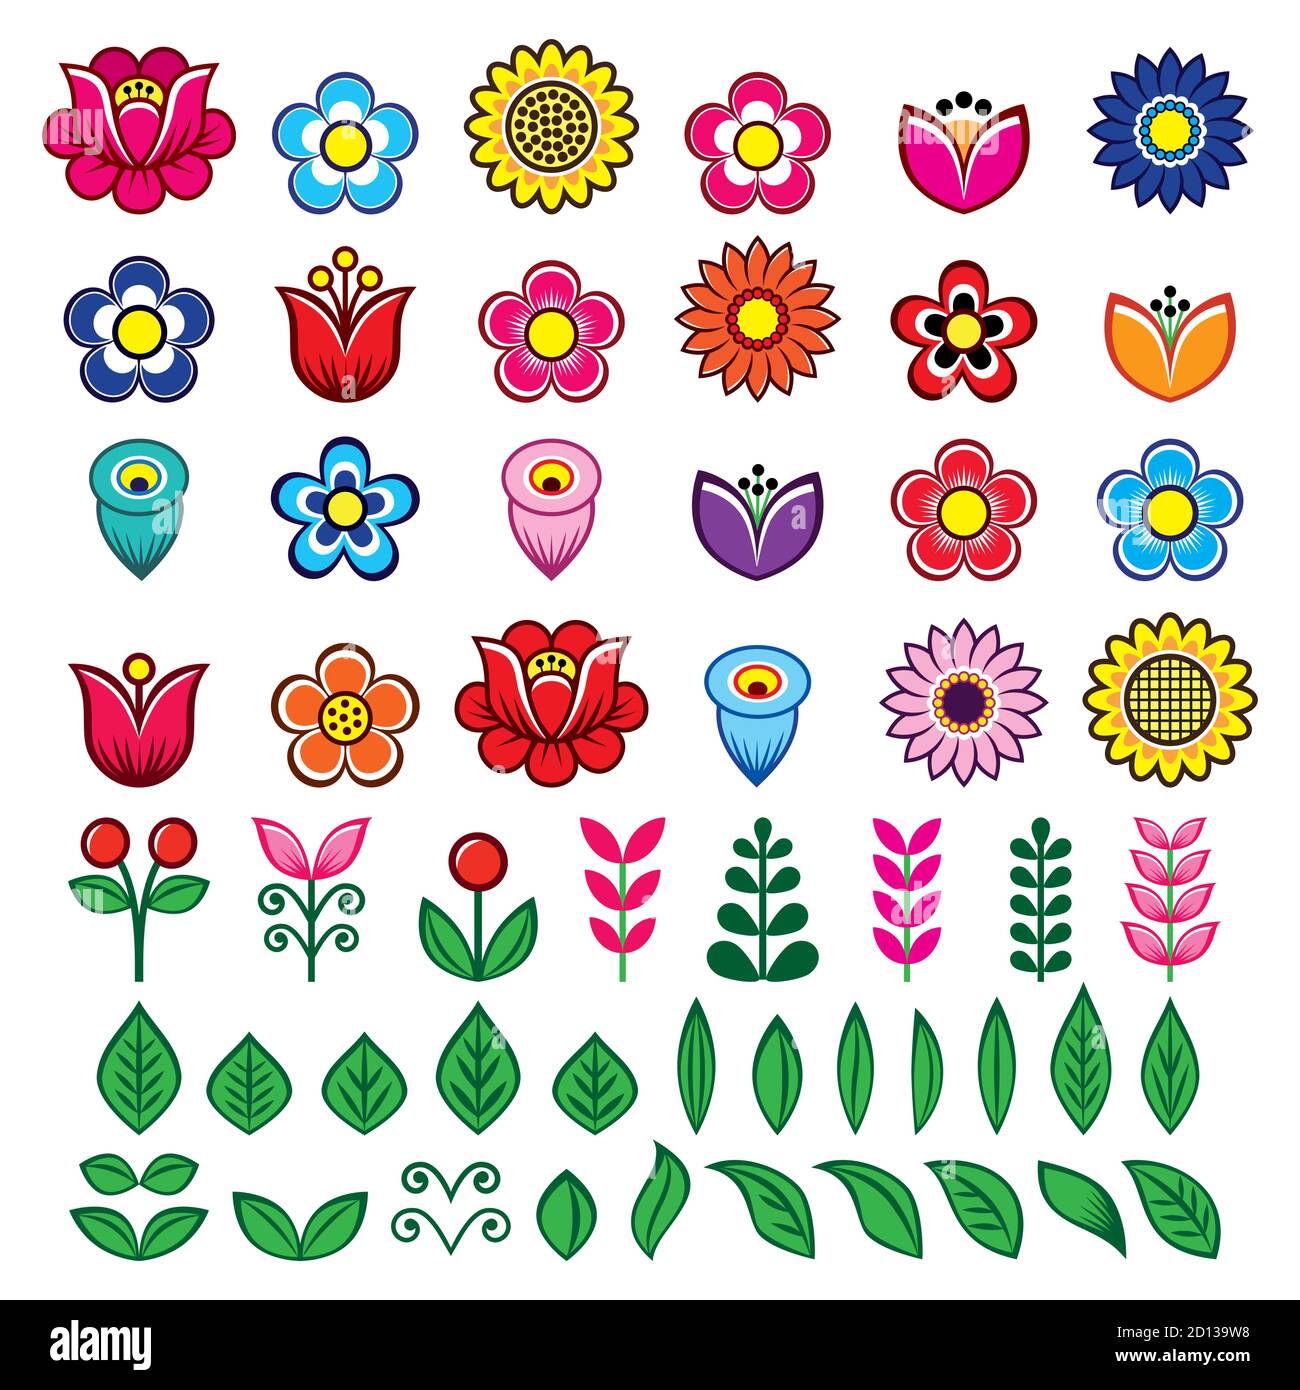 Conjunto de diseño de flores y hojas populares grandes vectores, elementos gráficos retro florales inspirados en patrones de bordado folklórico polaco. Perfecto para impresiones de tela Ilustración del Vector